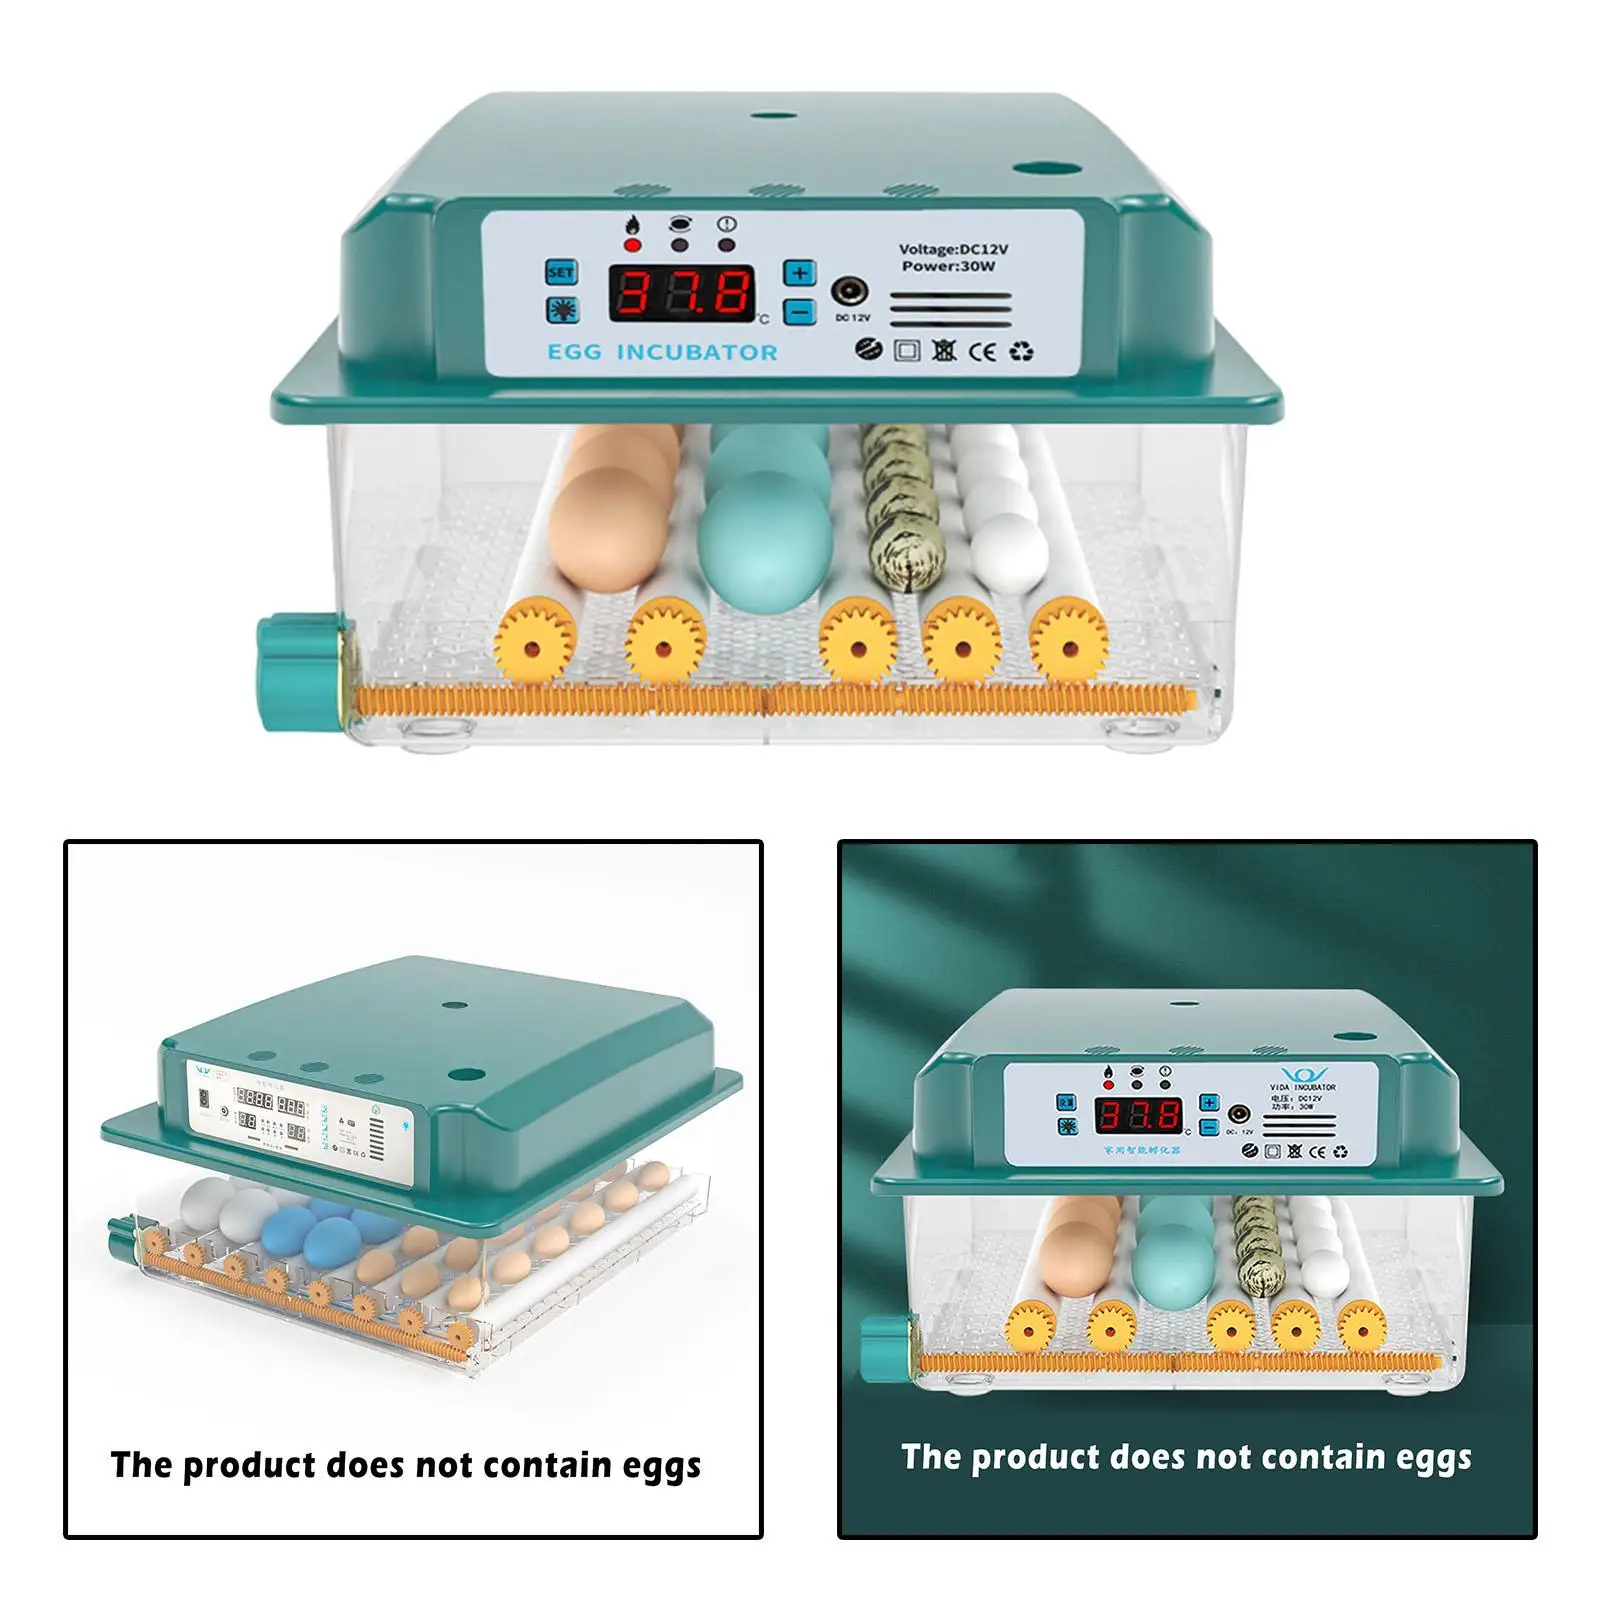 Как правильно выбирать яйца для закладки в инкубатор?